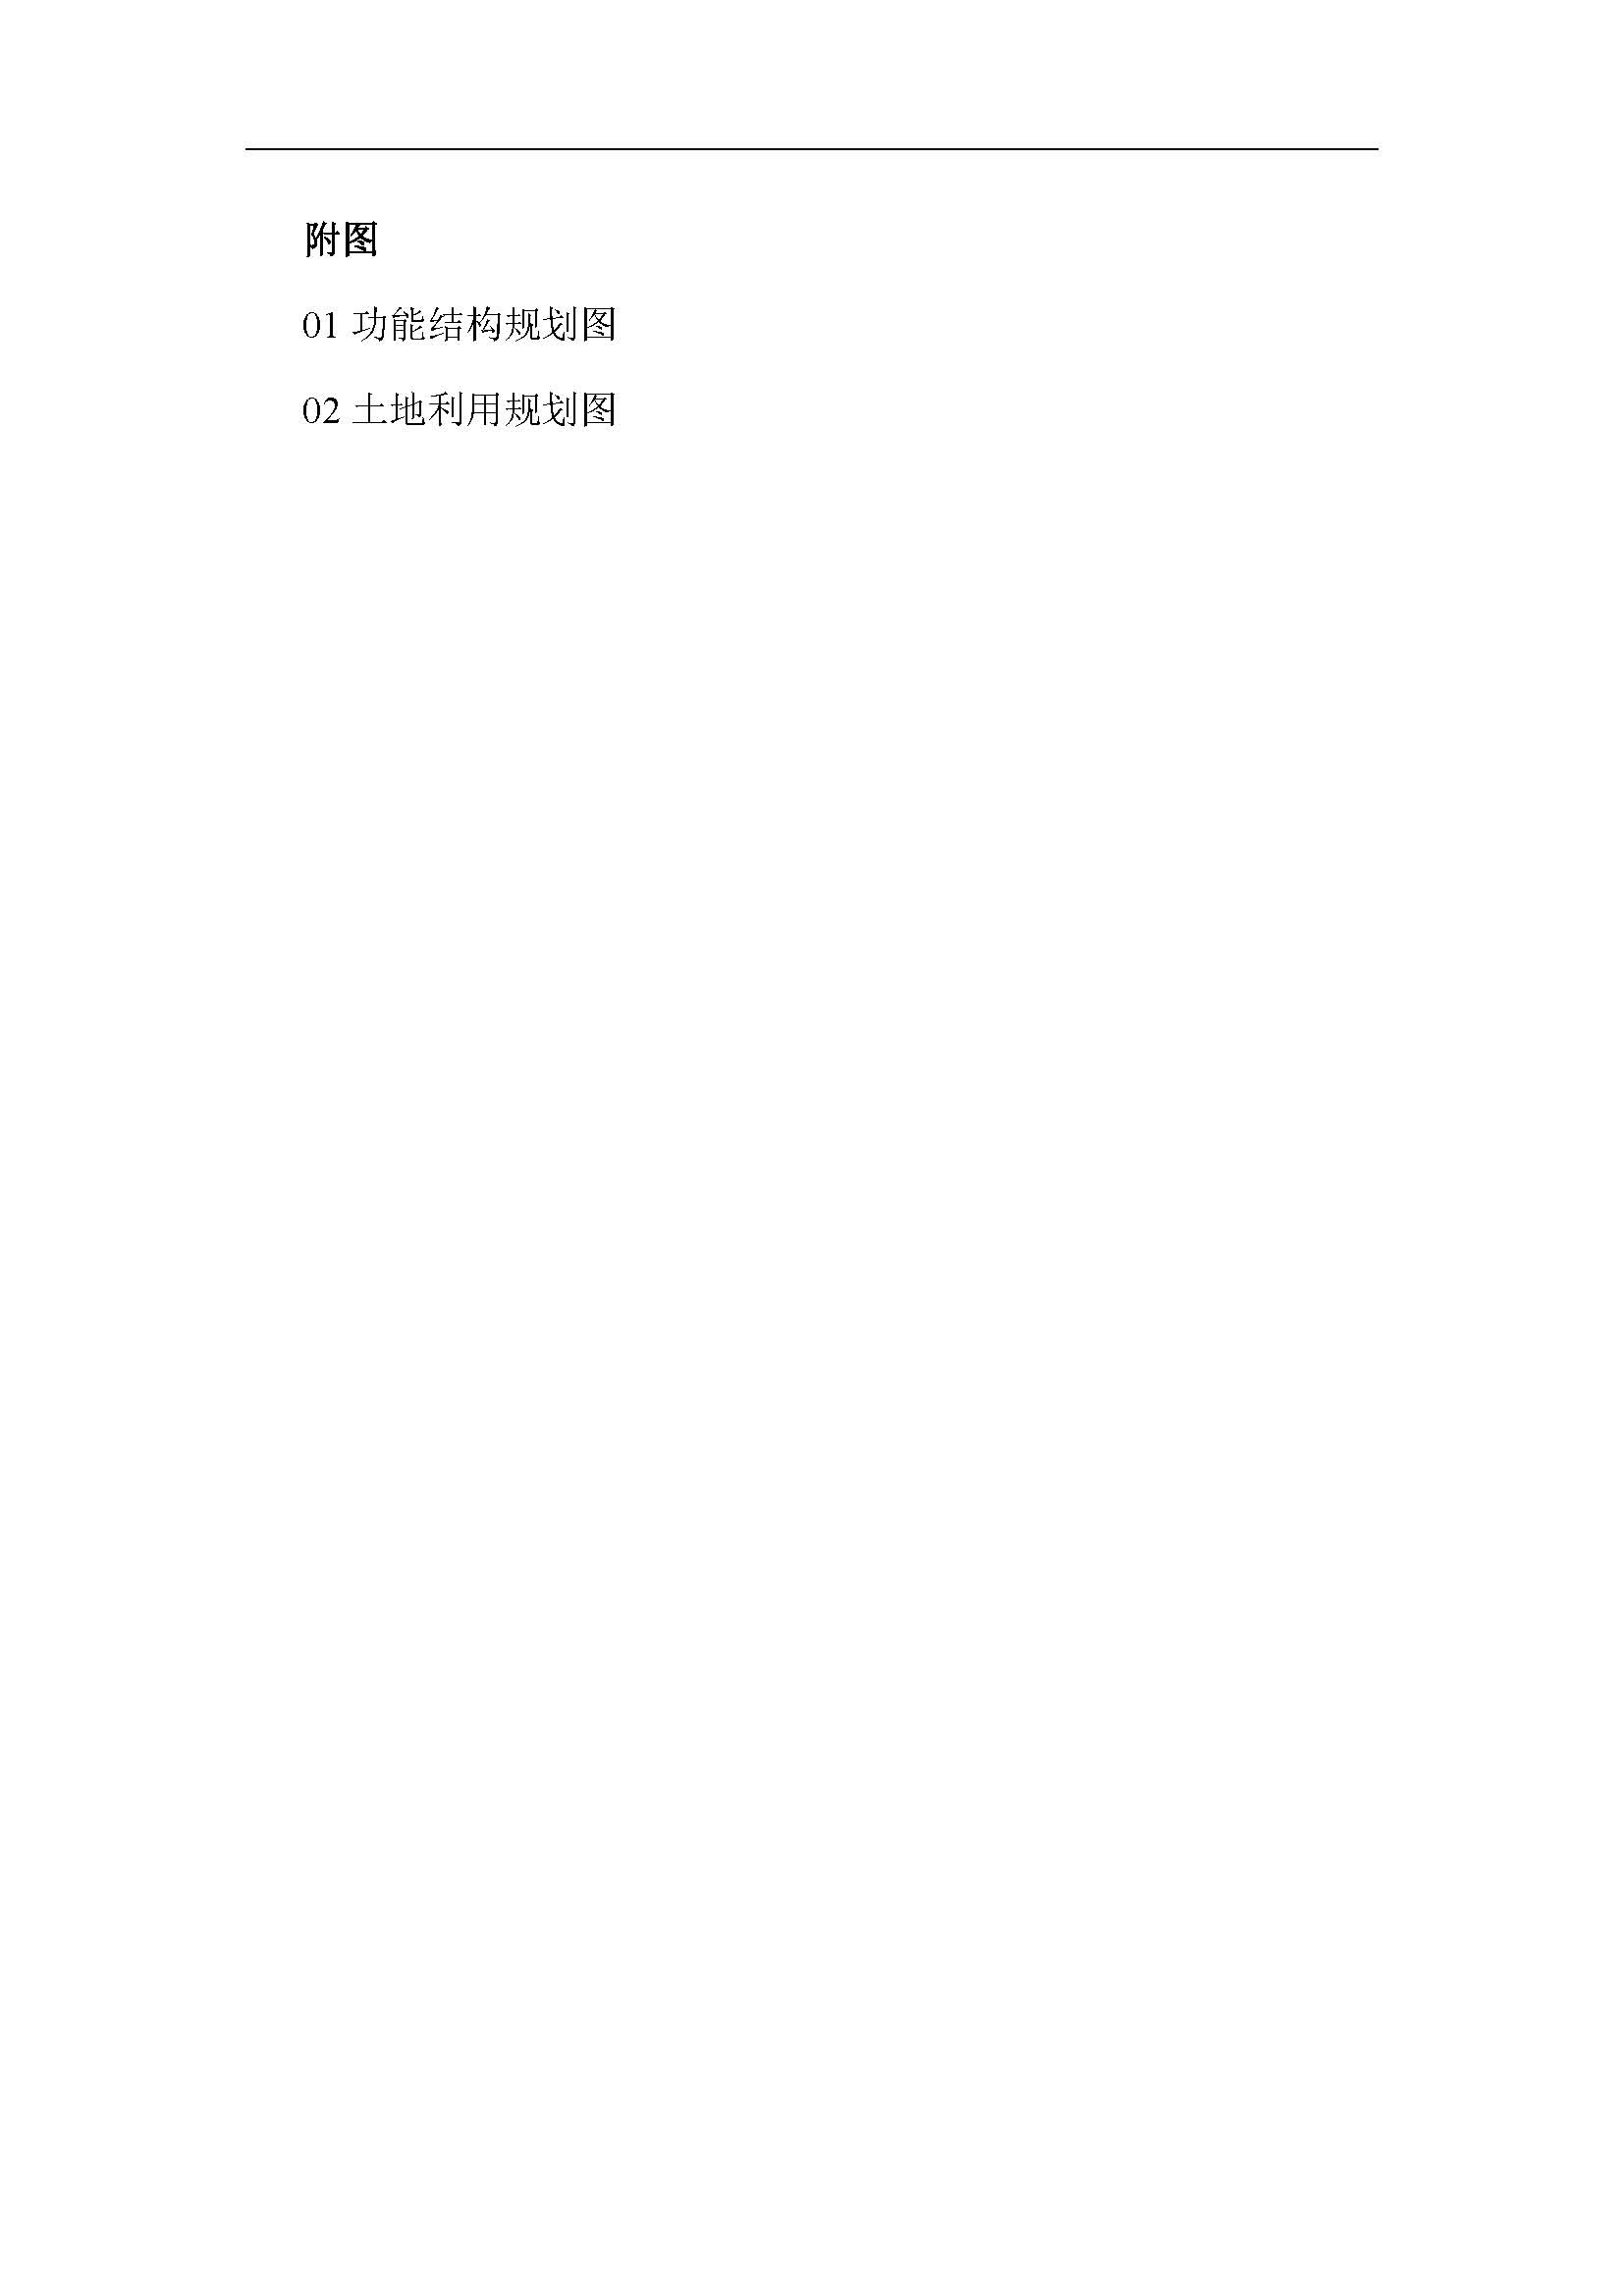 连平县产业物流园首期控制性详细规划东部片区修编——批后公示_页面_07.jpg